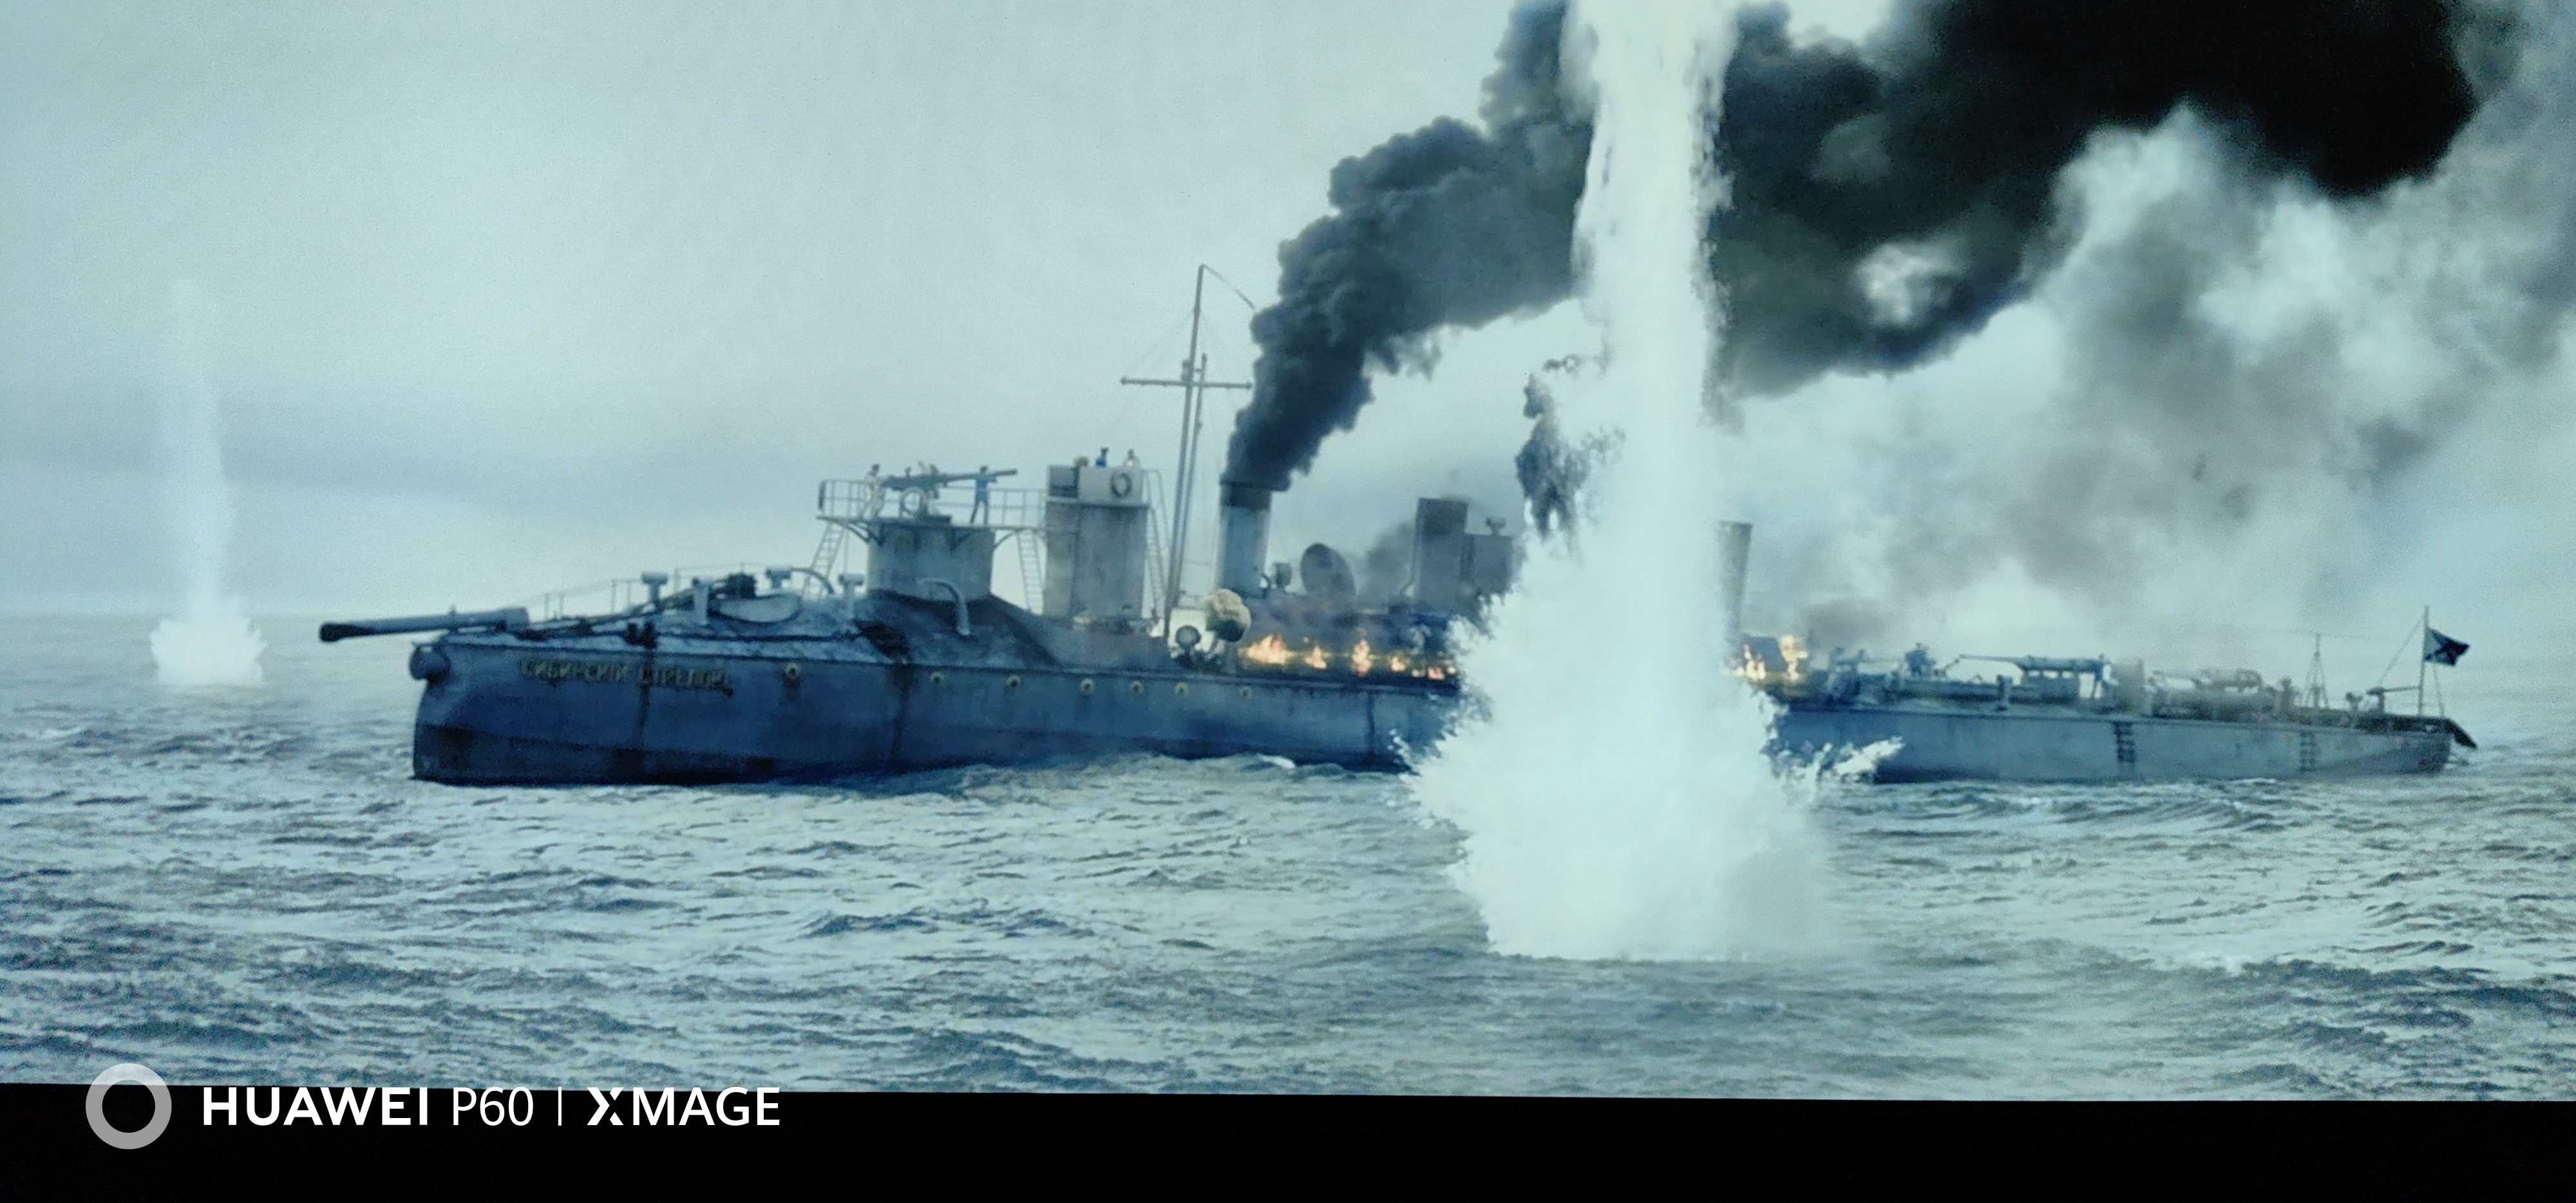 无畏上将高尔察克>      此片为蓝光圆盘  此影片 故事情节不错, 战争场面比较真实..... ...